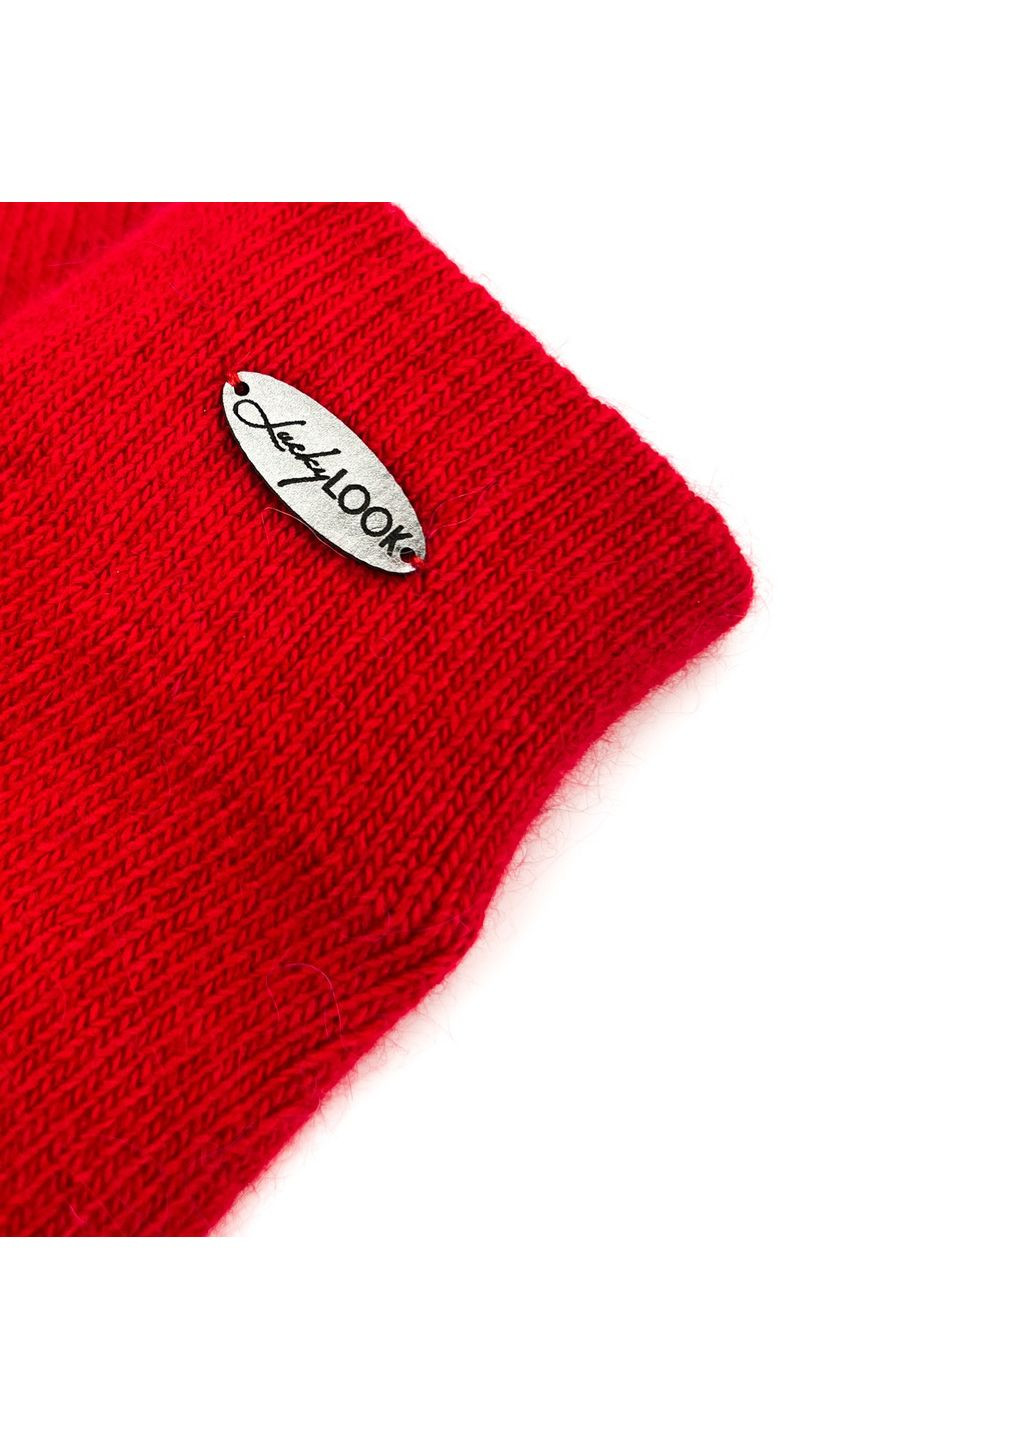 Перчатки женские шерсть красные JUTTA LuckyLOOK 259-522 (290278495)